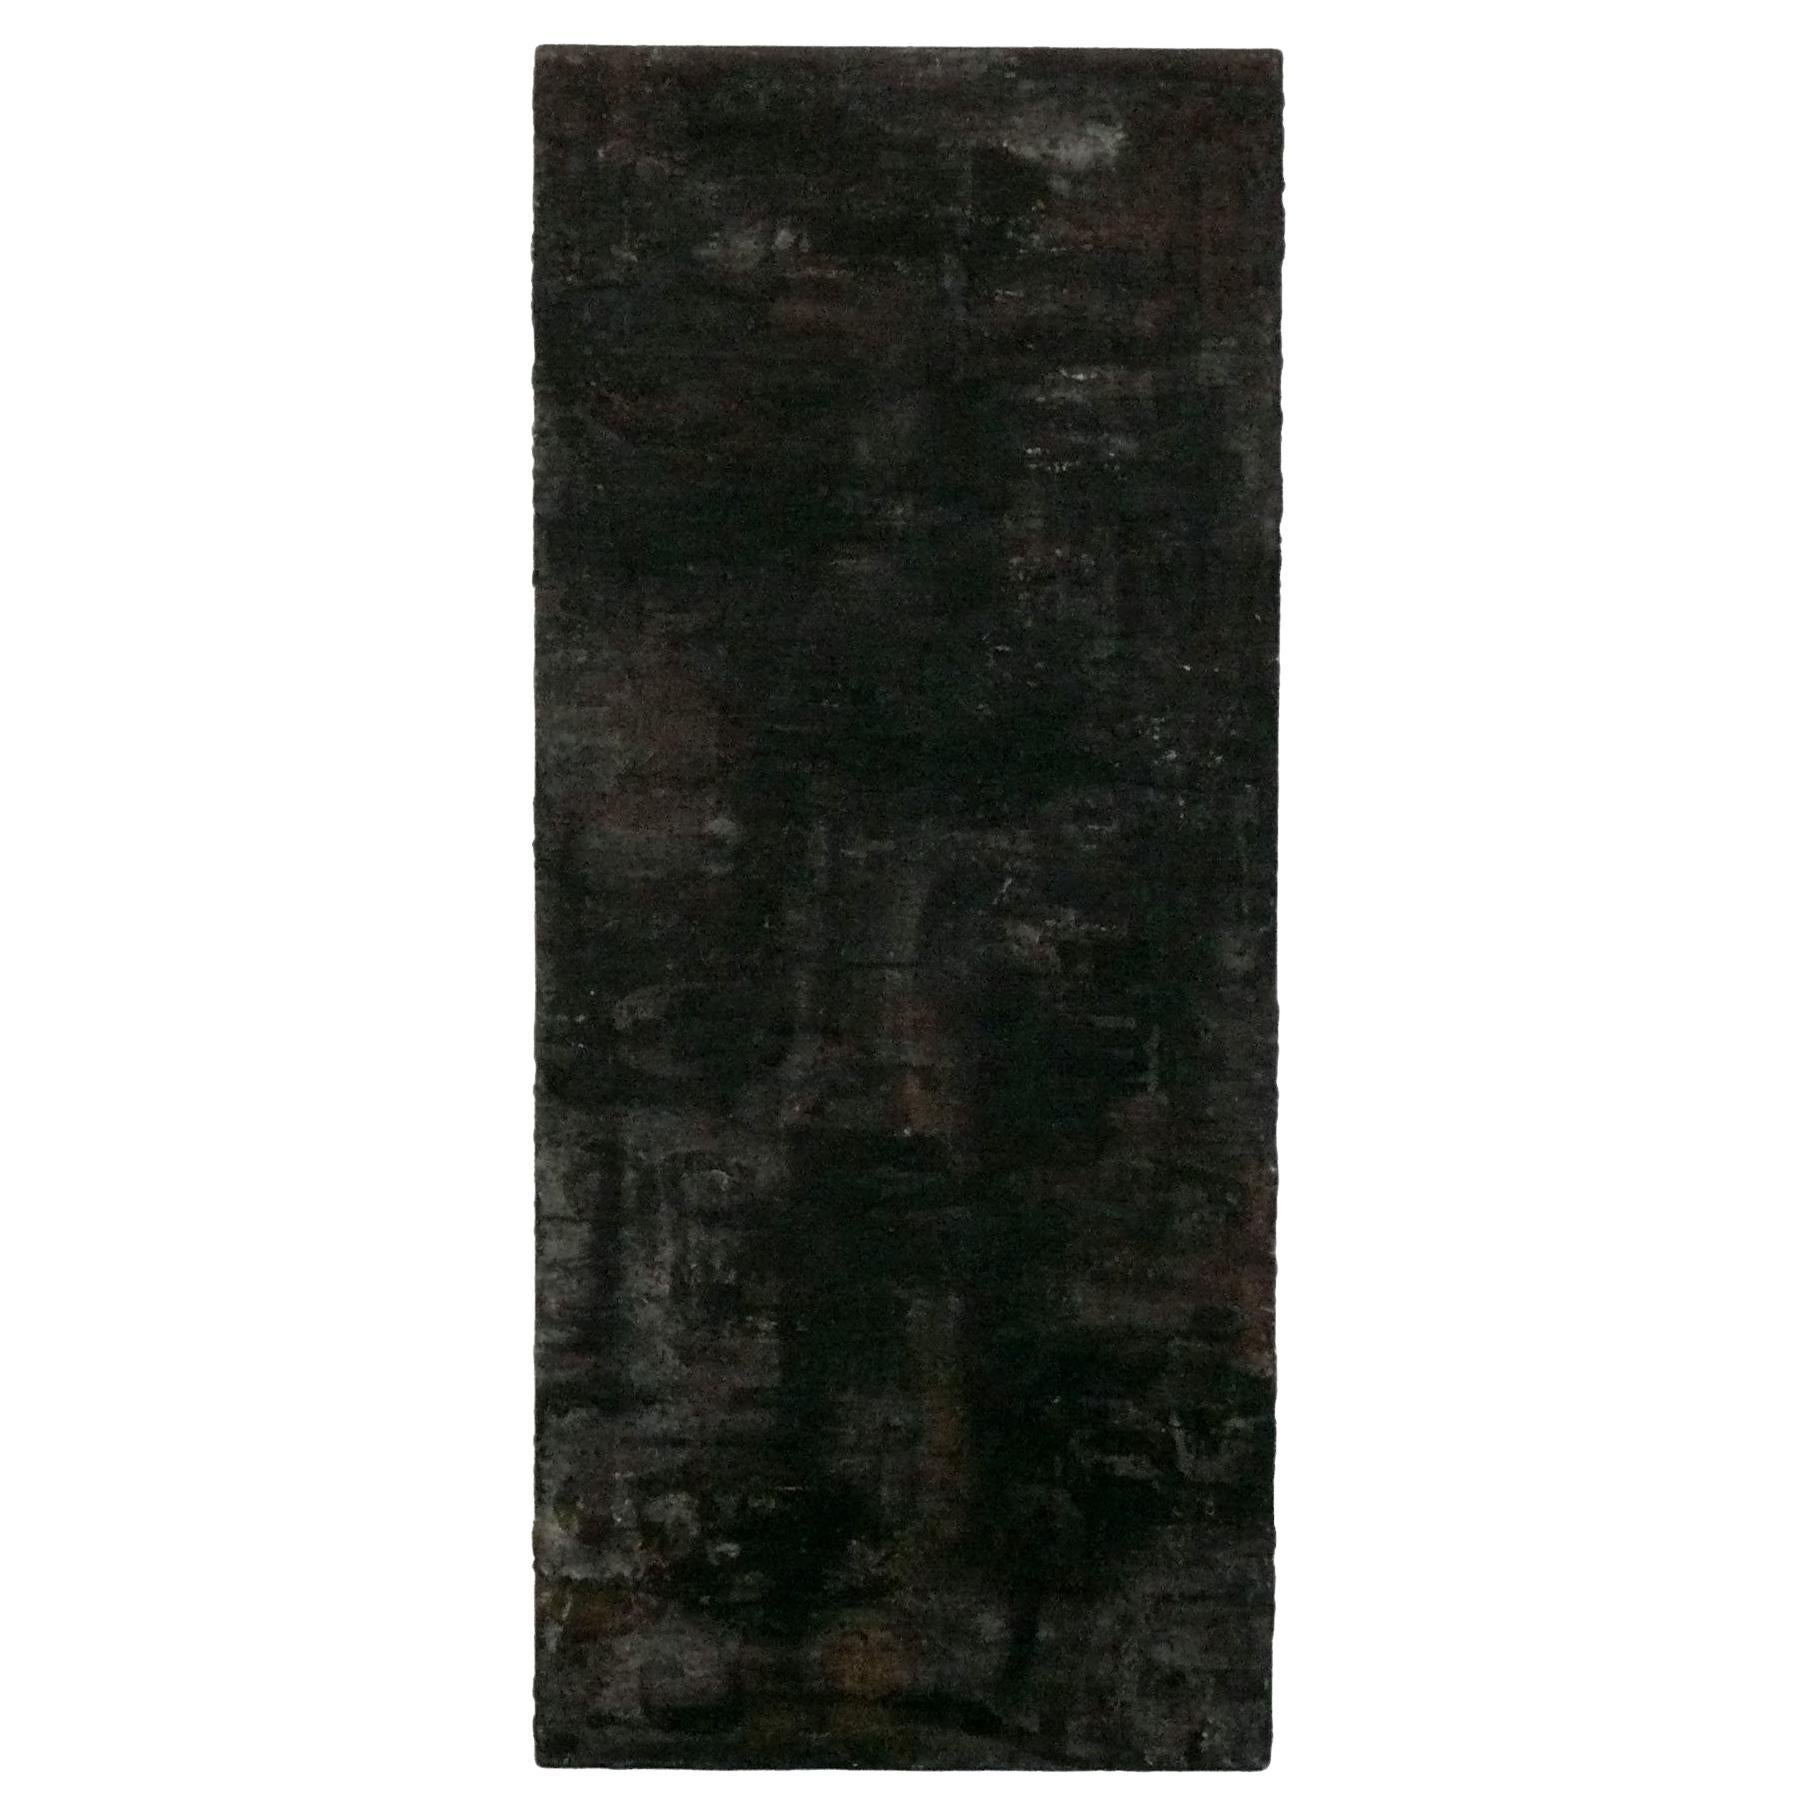 Schwarzes strukturiertes abstraktes Gemälde, ca. 1960er Jahre, 56" x 24" Vertikales oder horizontales Gemälde